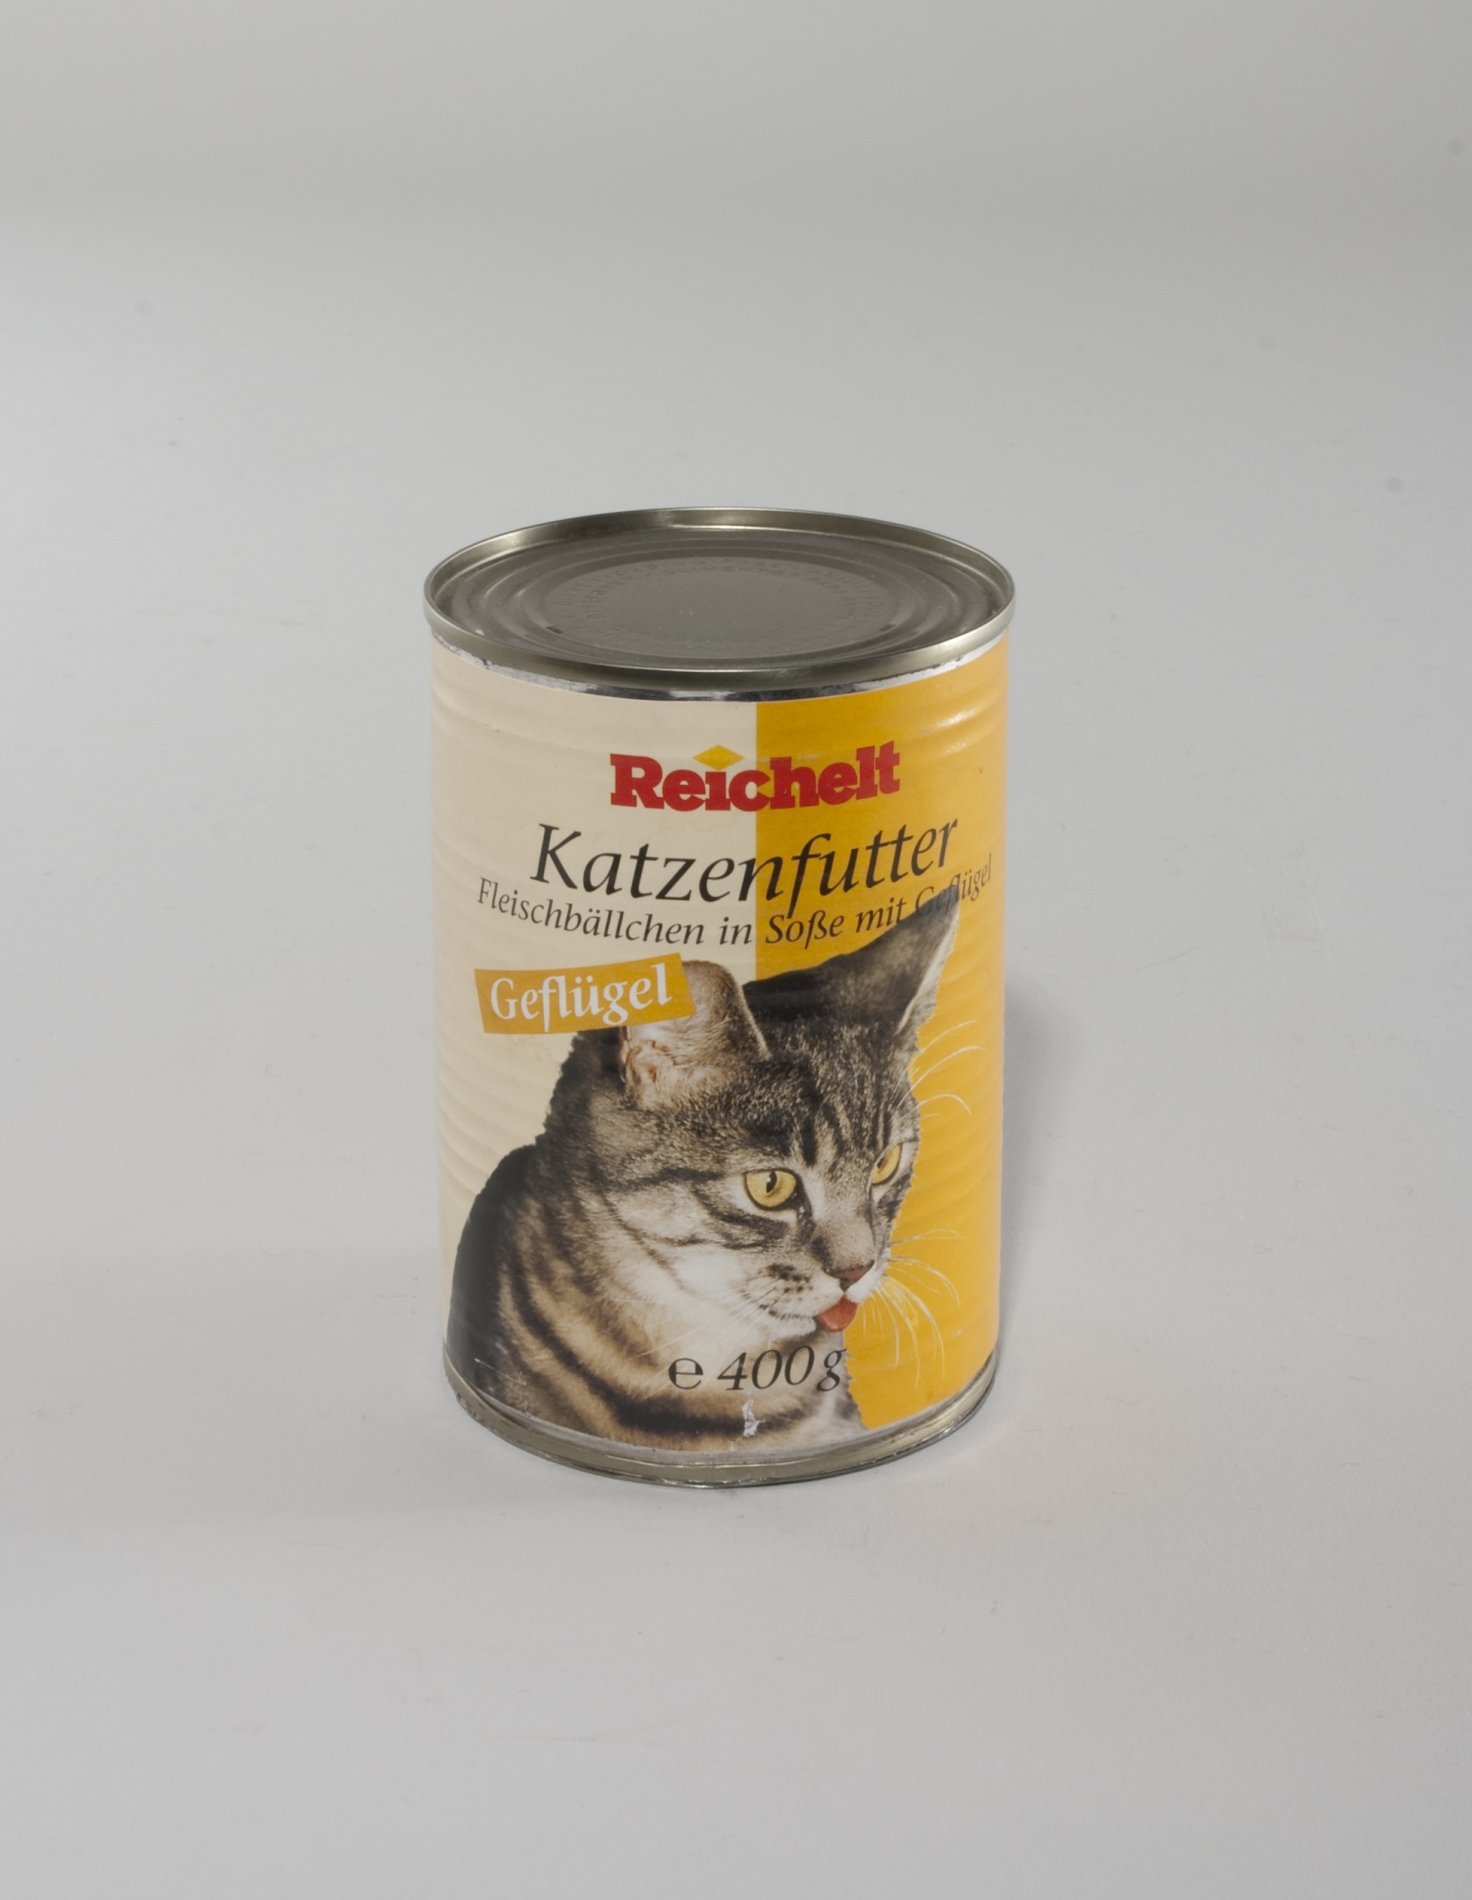 Katzenfutter-Dose der "Reichelt" Eigenmarke (Stiftung Domäne Dahlem - Landgut und Museum, Weiternutzung nur mit Genehmigung des Museums CC BY-NC-SA)